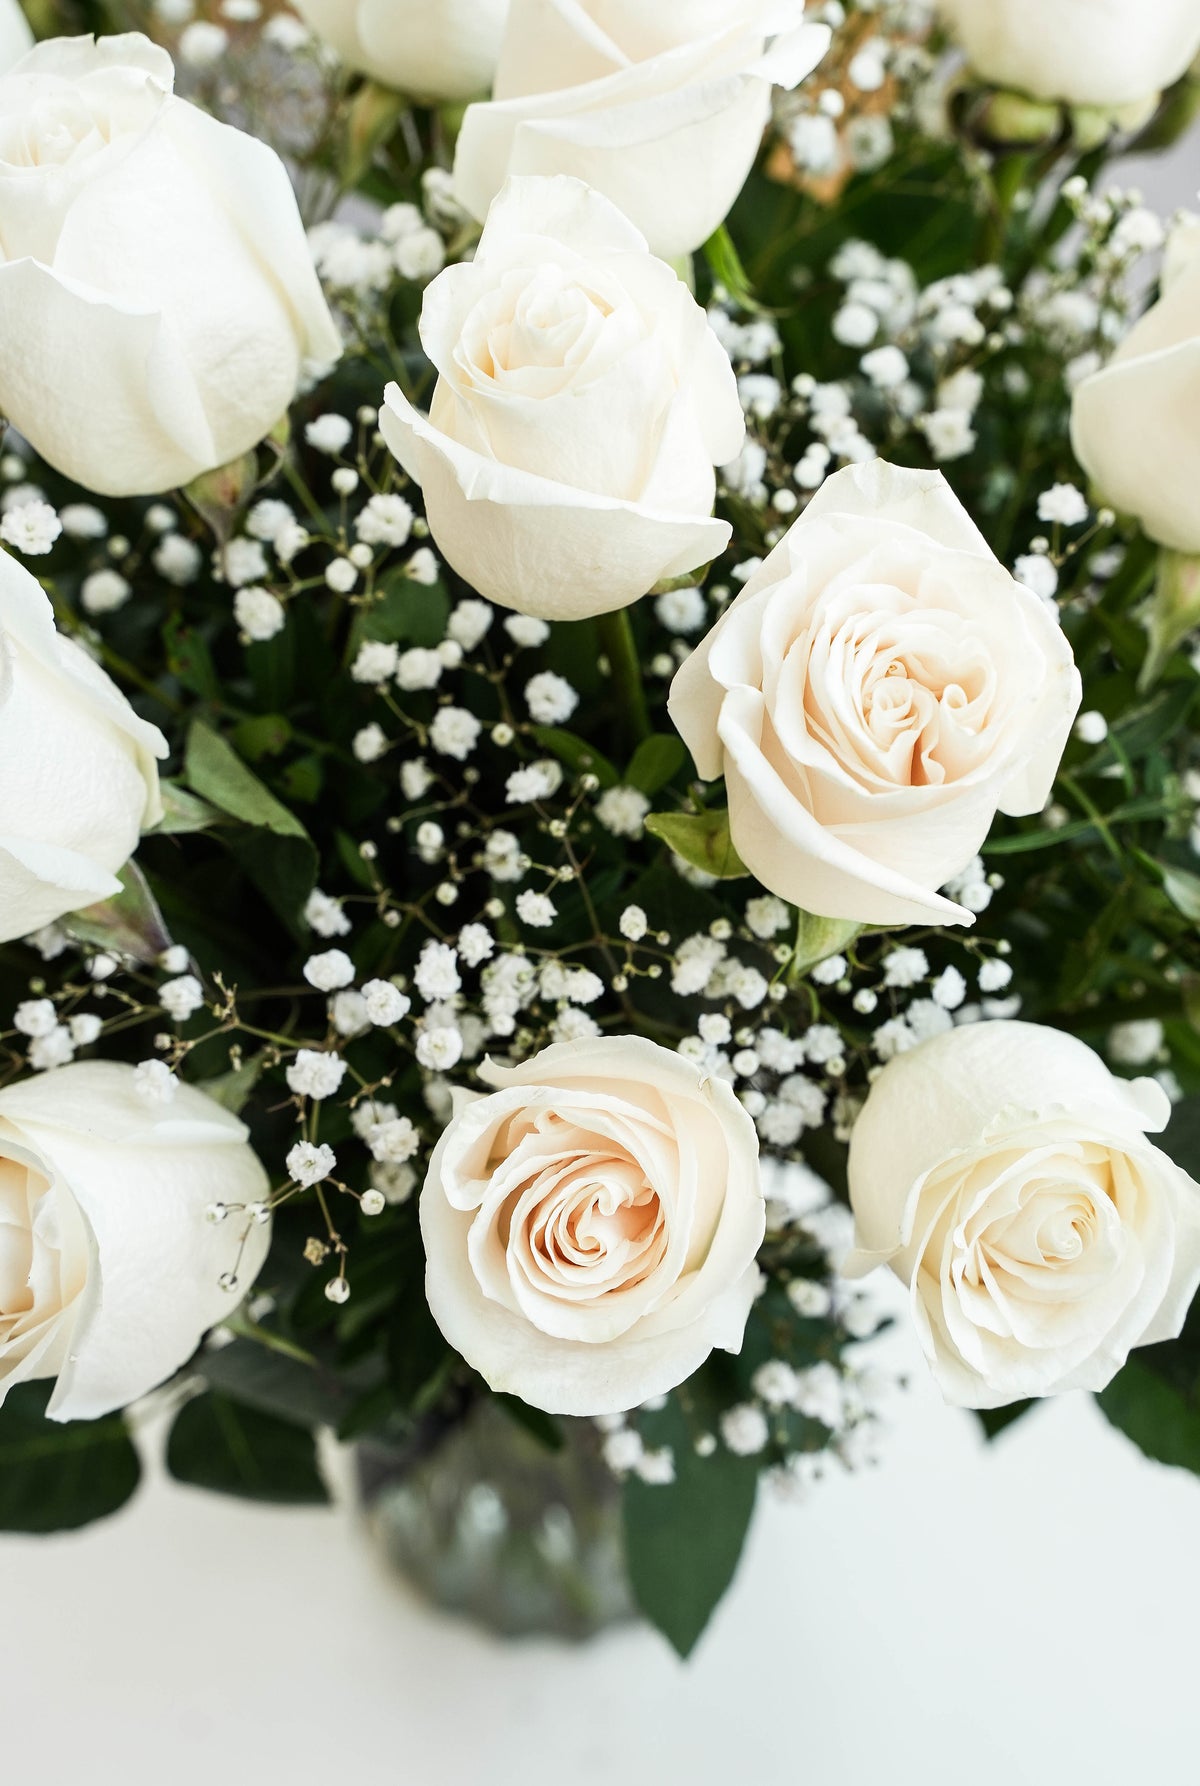 24 Long Stem White Roses - Vase